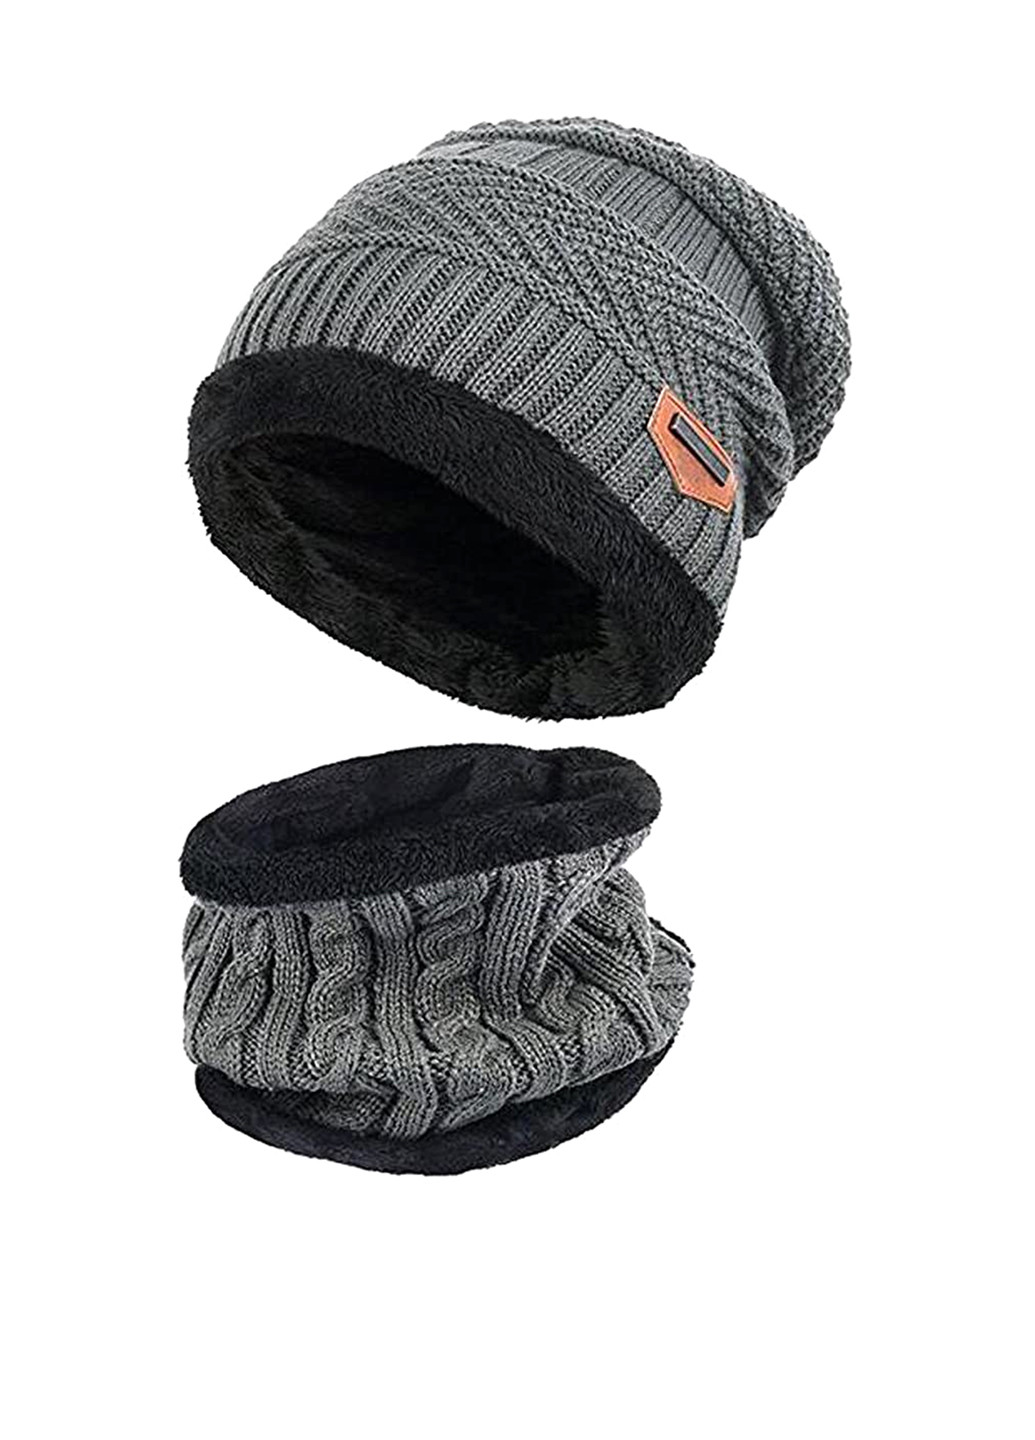 Комплект головных уборов (шапка, шарф-снуд) Fashion шапка + шарф-снуд однотонные серые акрил